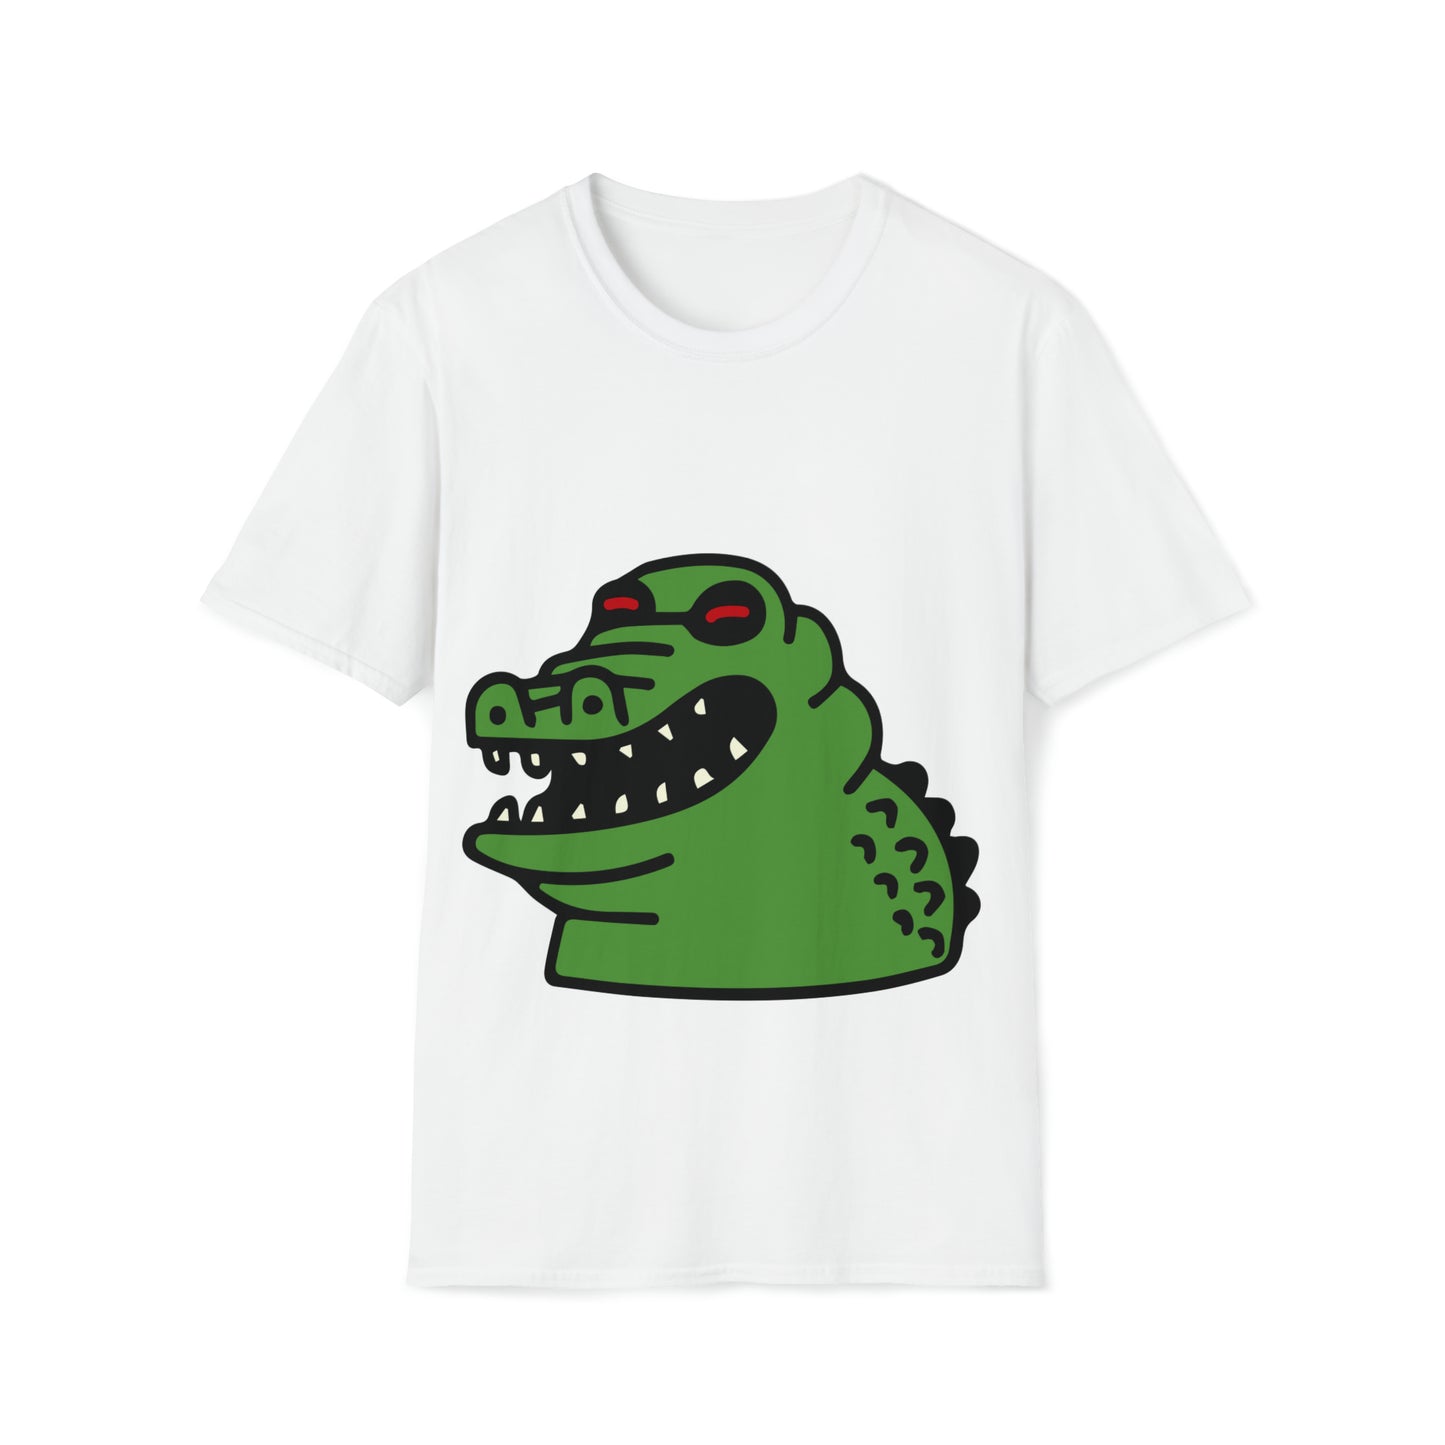 Mean Green Crocodile tshirt